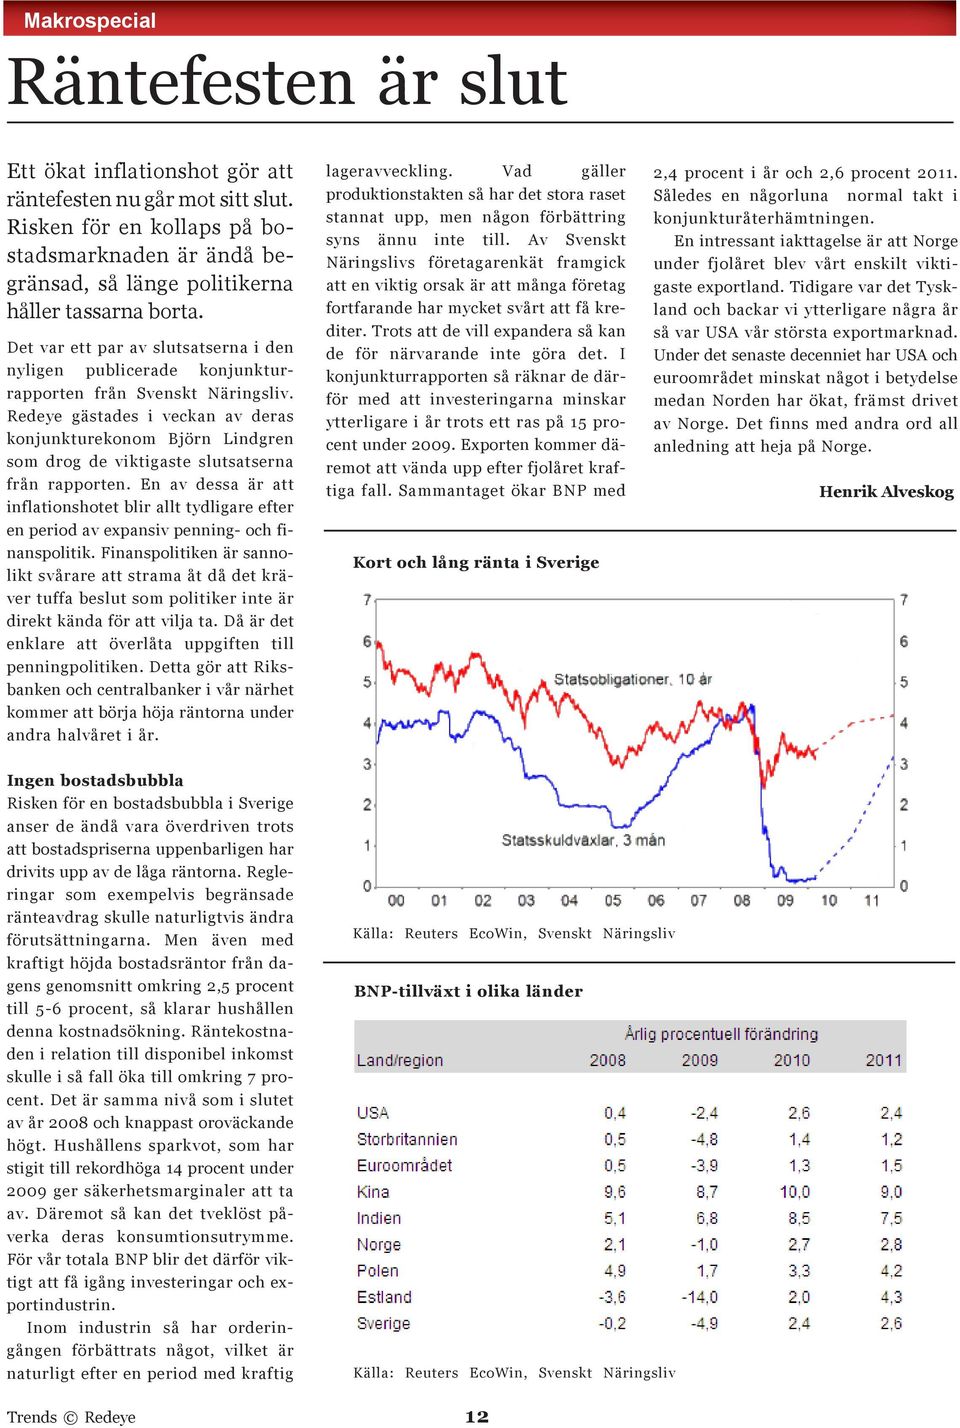 Det var ett par av slutsatserna i den nyligen publicerade konjunkturrapporten från Svenskt Näringsliv.